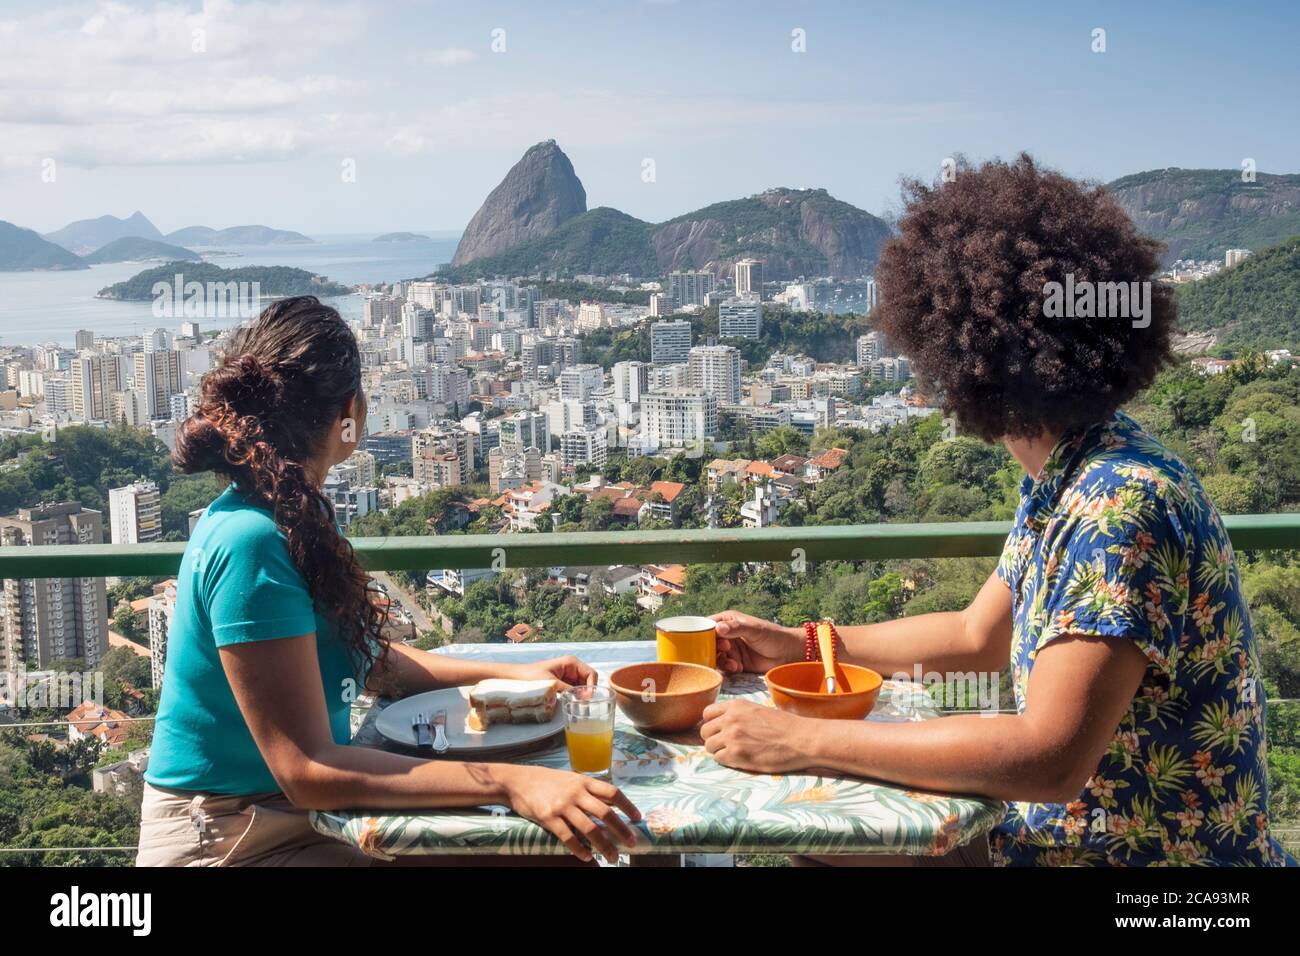 Ein multiethnisches Paar, das zusammen frühstücken und den Blick auf den Zuckerhut und die Skyline von Rio, Rio de Janeiro, Brasilien und Südamerika schweifen lässt Stockfoto